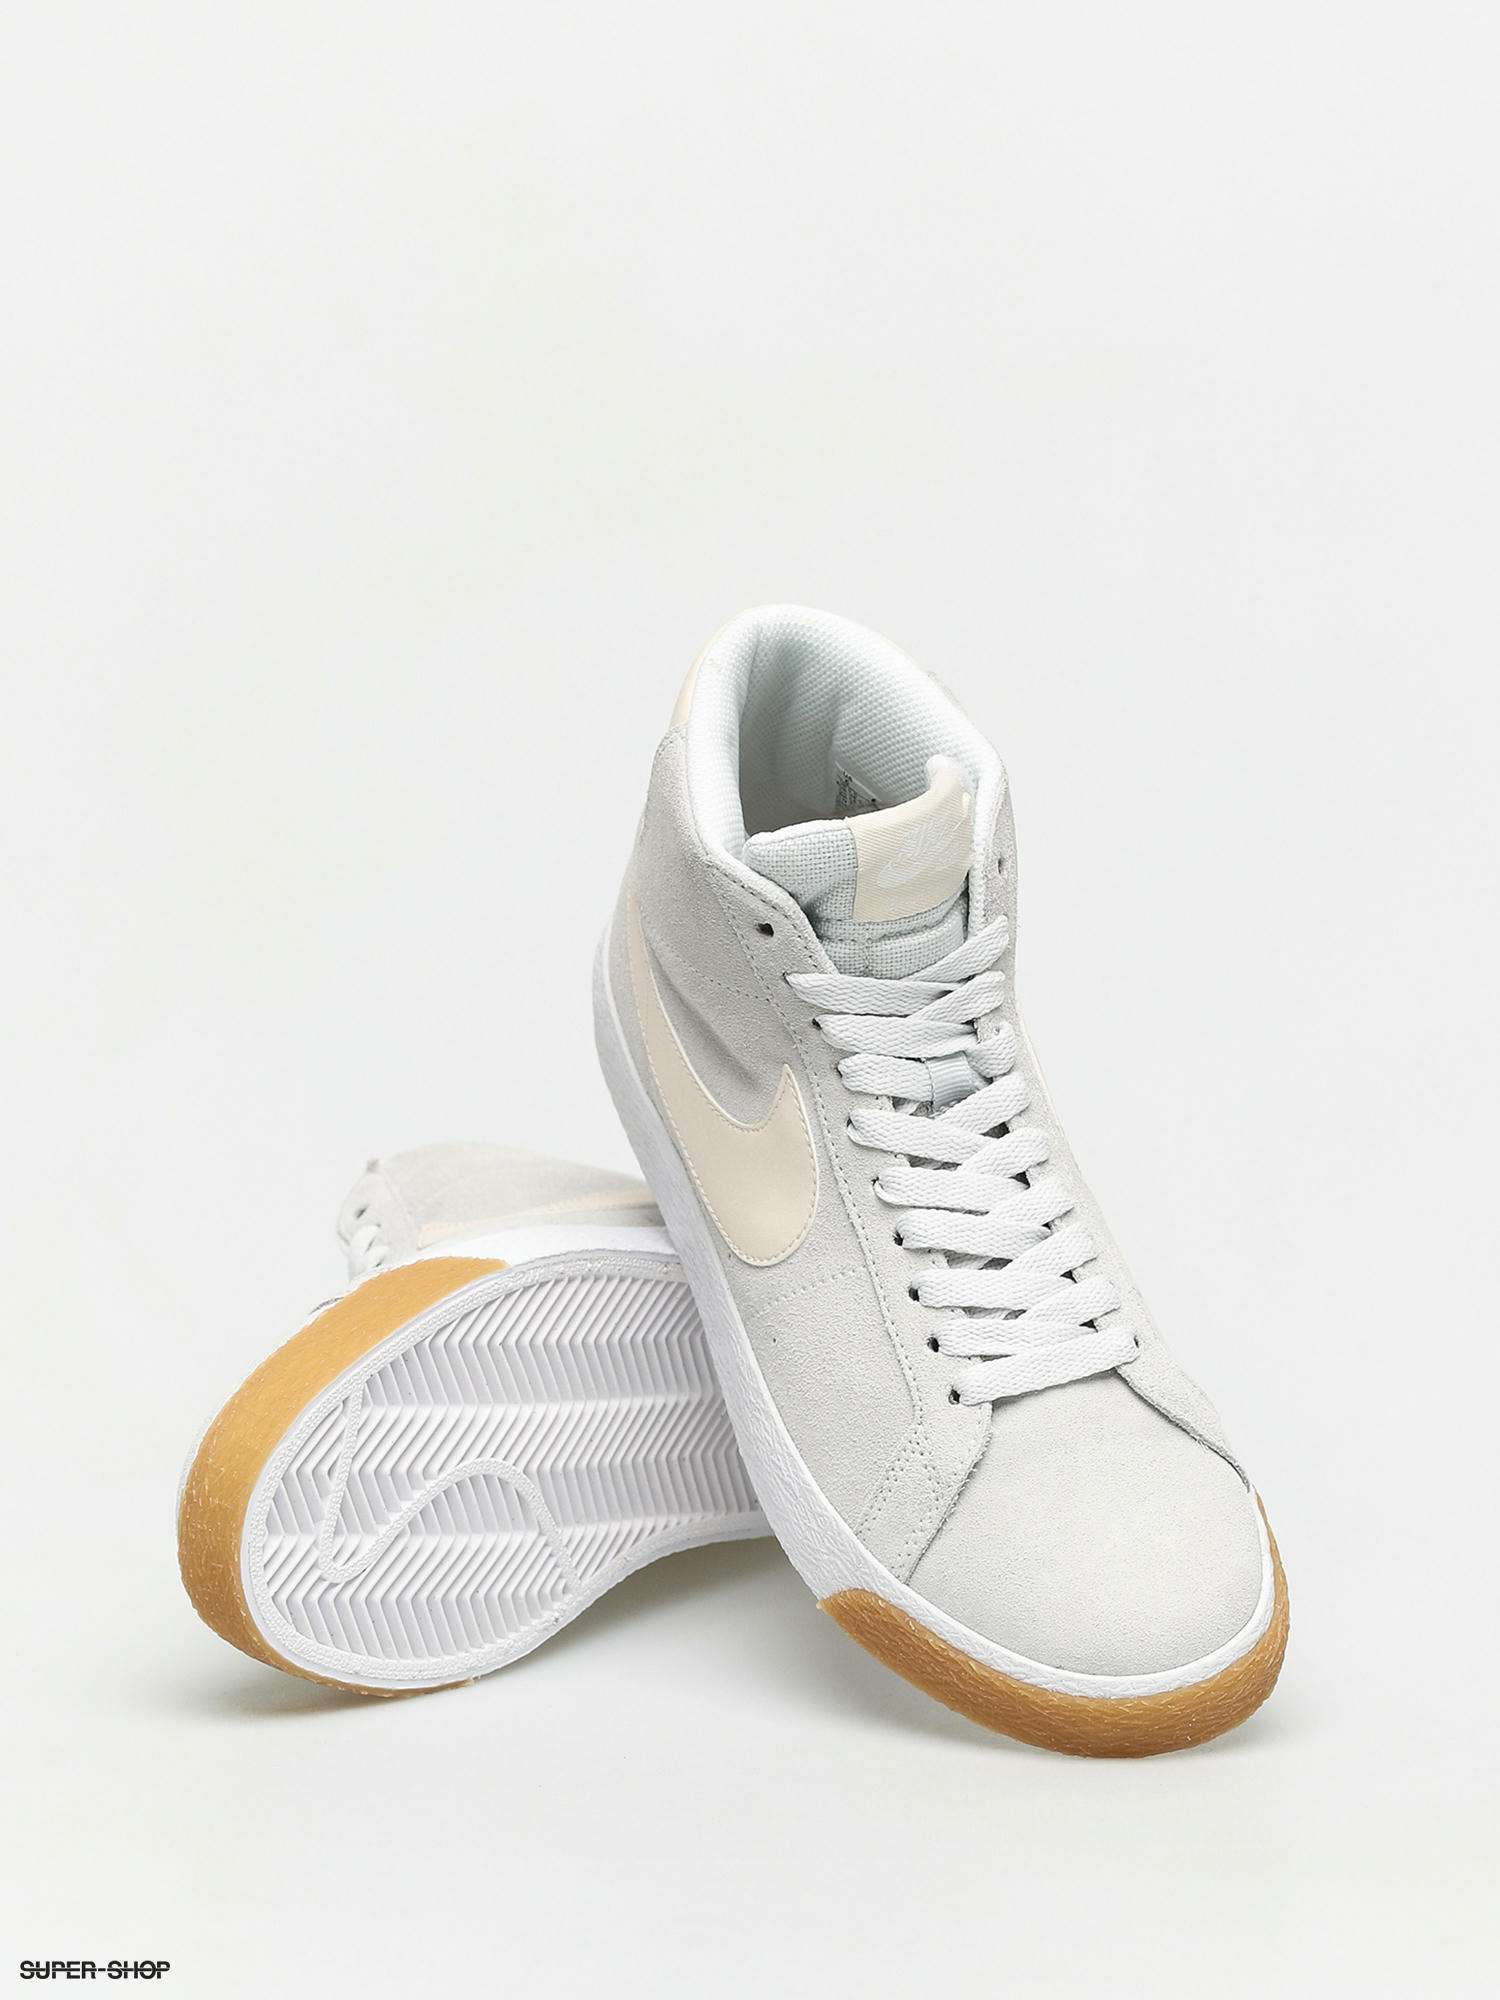 cream white nike shoes